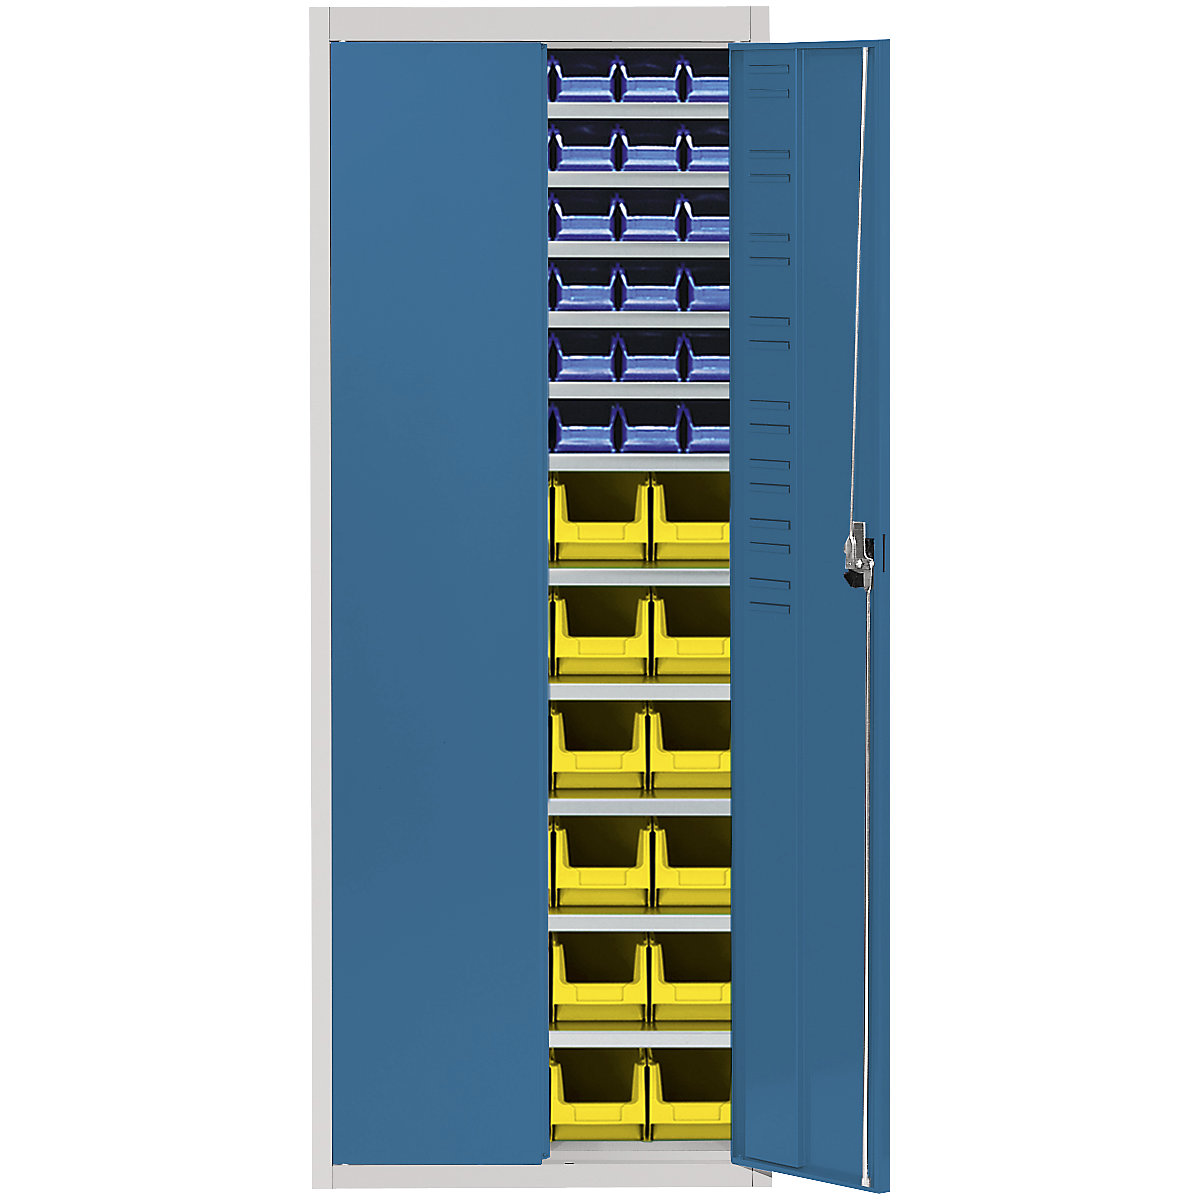 Magazijnkast met magazijnbakken – mauser, h x b x d = 1740 x 680 x 280 mm, tweekleurig, kastframe grijs, deuren blauw, 60 bakken-5